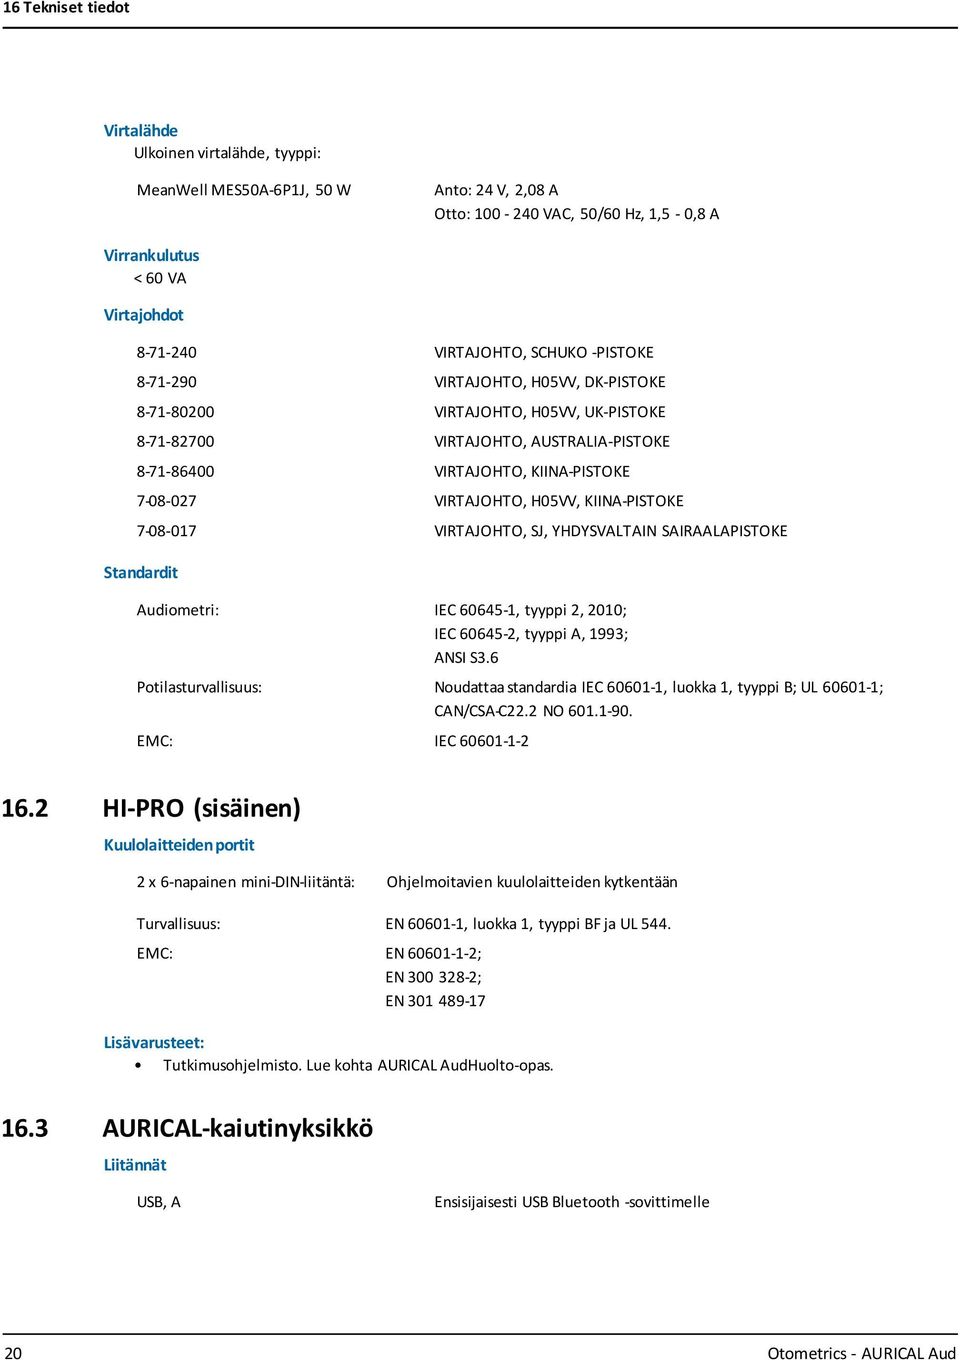 H05VV, KIINA-PISTOKE 7-08-017 VIRTAJOHTO, SJ, YHDYSVALTAIN SAIRAALAPISTOKE Standardit Audiometri: IEC 60645-1, tyyppi 2, 2010; IEC 60645-2, tyyppi A, 1993; ANSI S3.